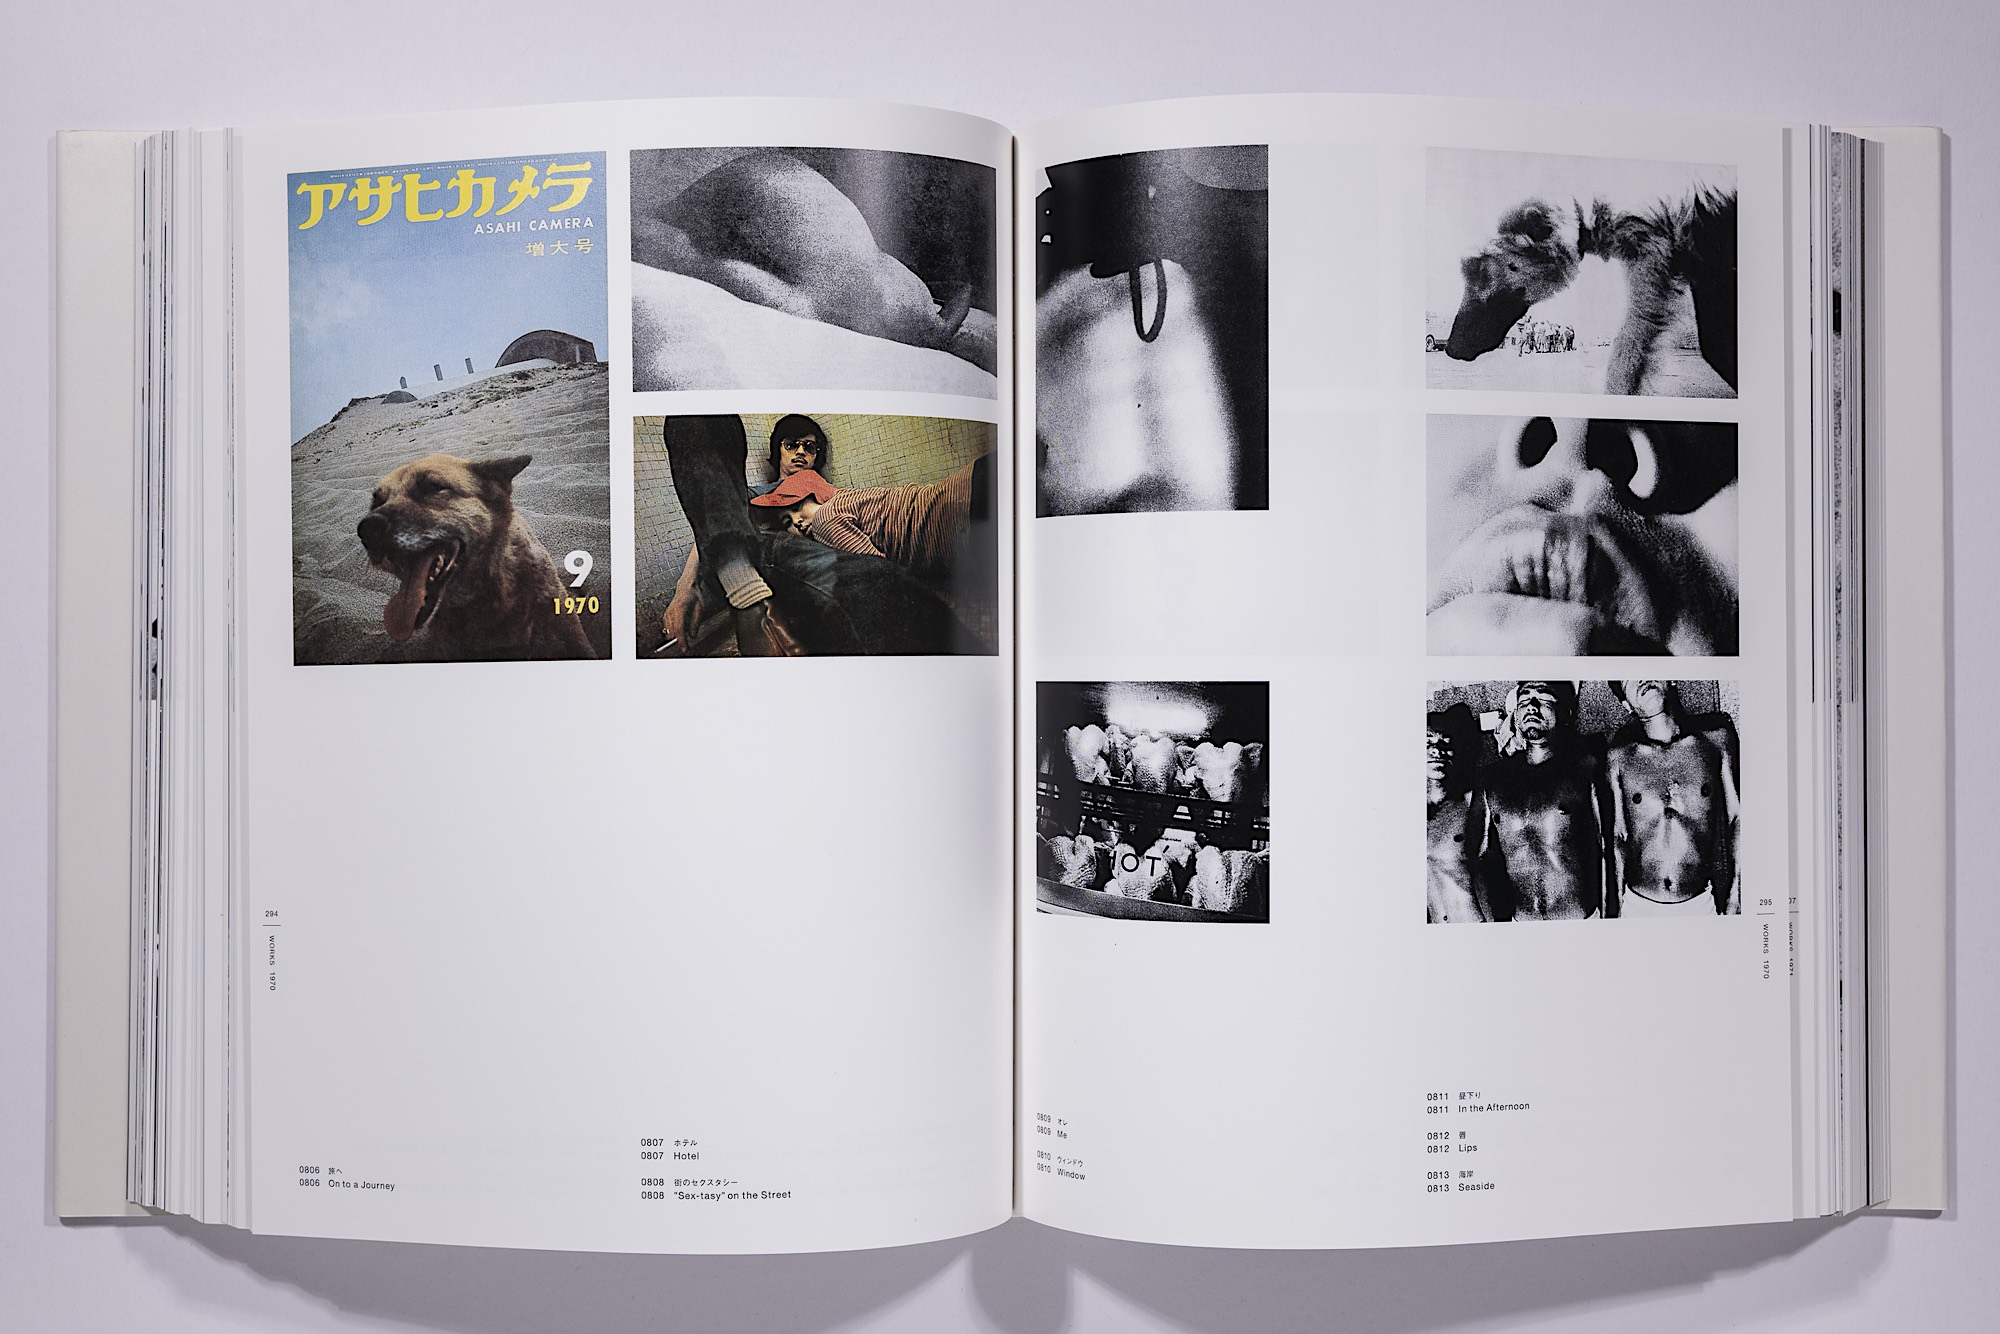 Daido Moriyama - The Complete Works of Daido Moriyama Image 66